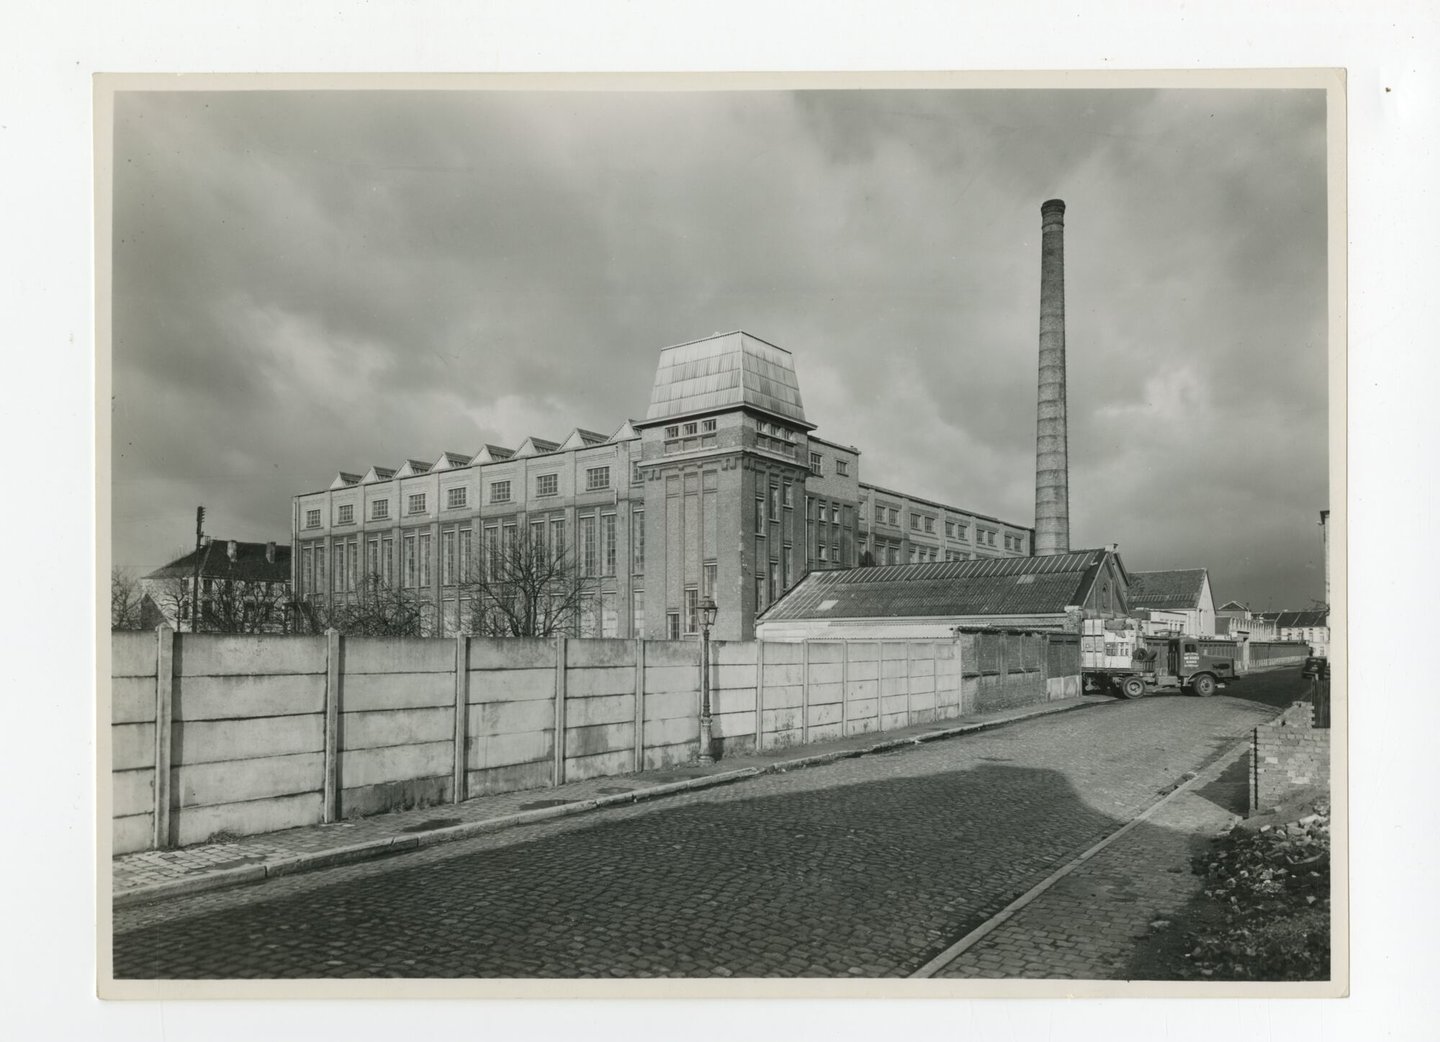 Buitenzicht van textielfabriek UCO Rooigem in Gent